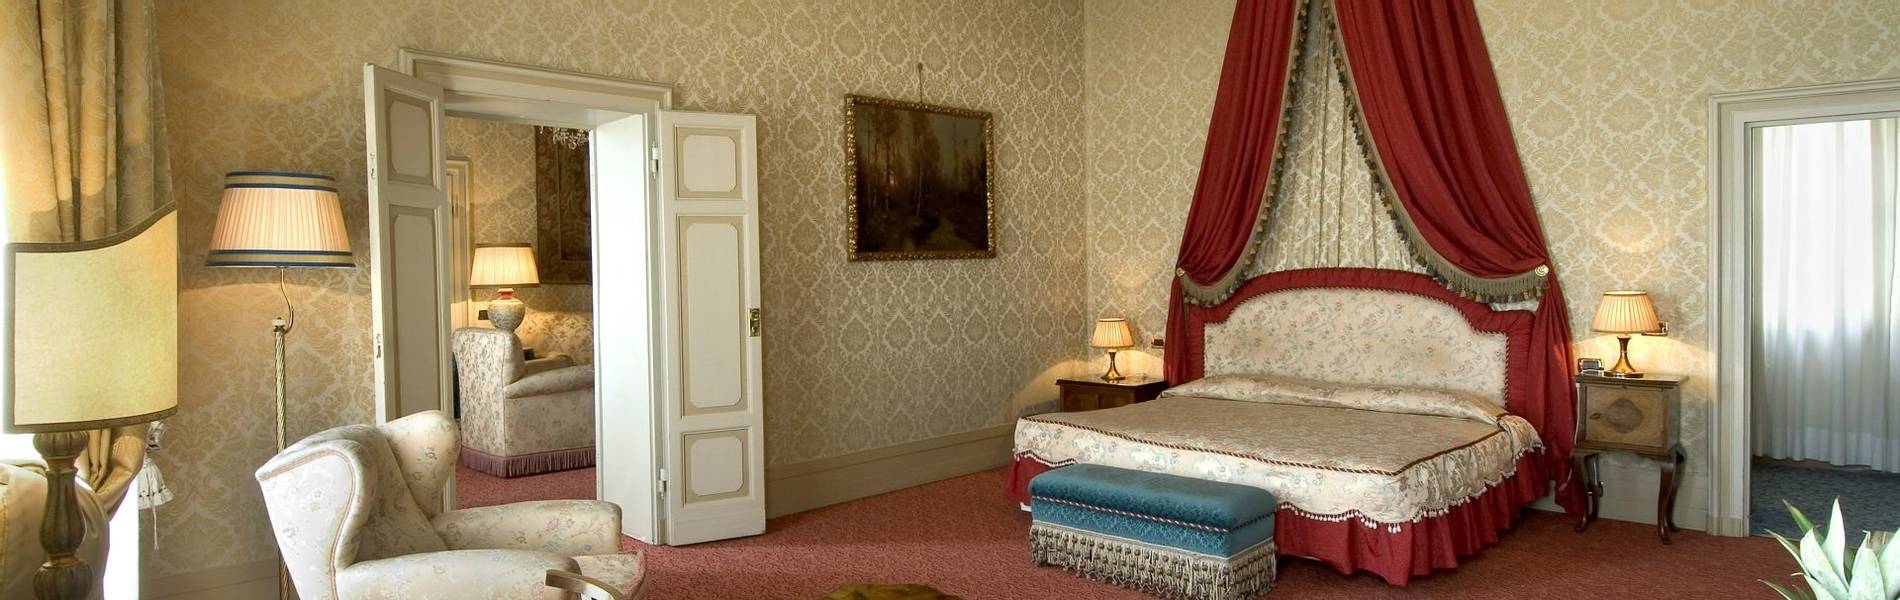 royal-suite-3.jpg